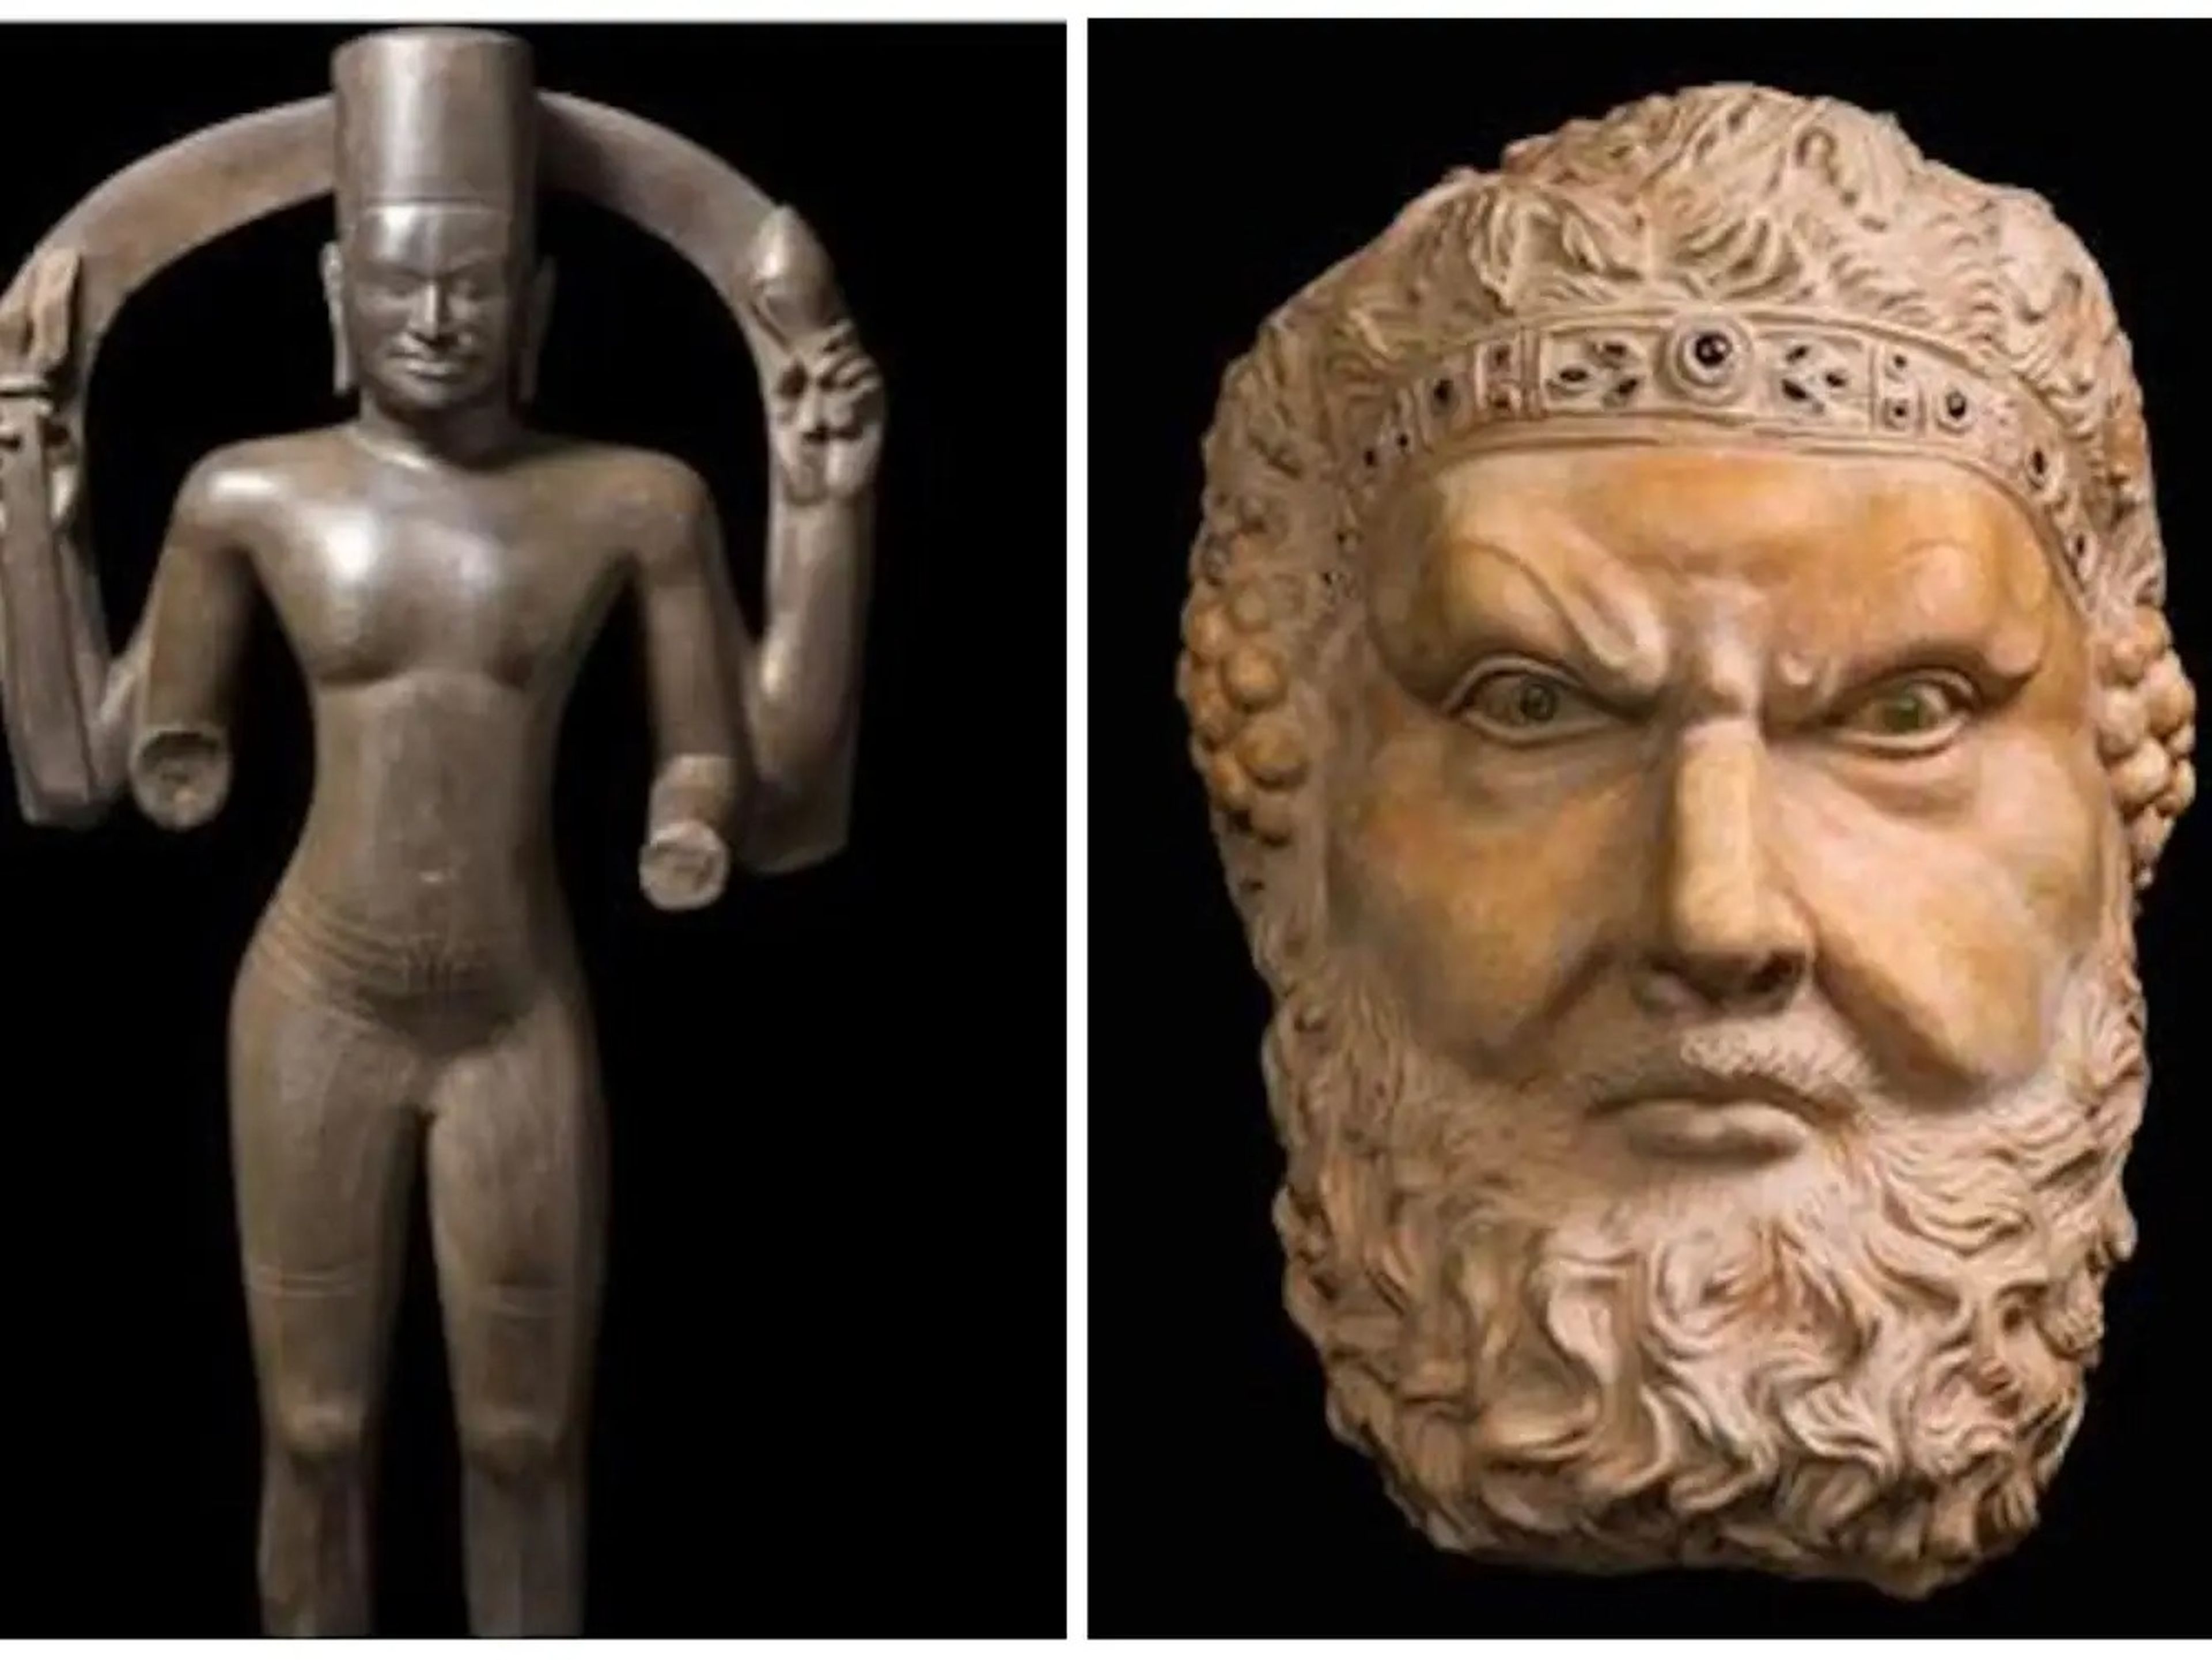 Imagen de "Hari Hara" y "La cabeza de Dionysus", esculturas vendidas a Sheikh Hamad Bin Abdullah al-Thani.